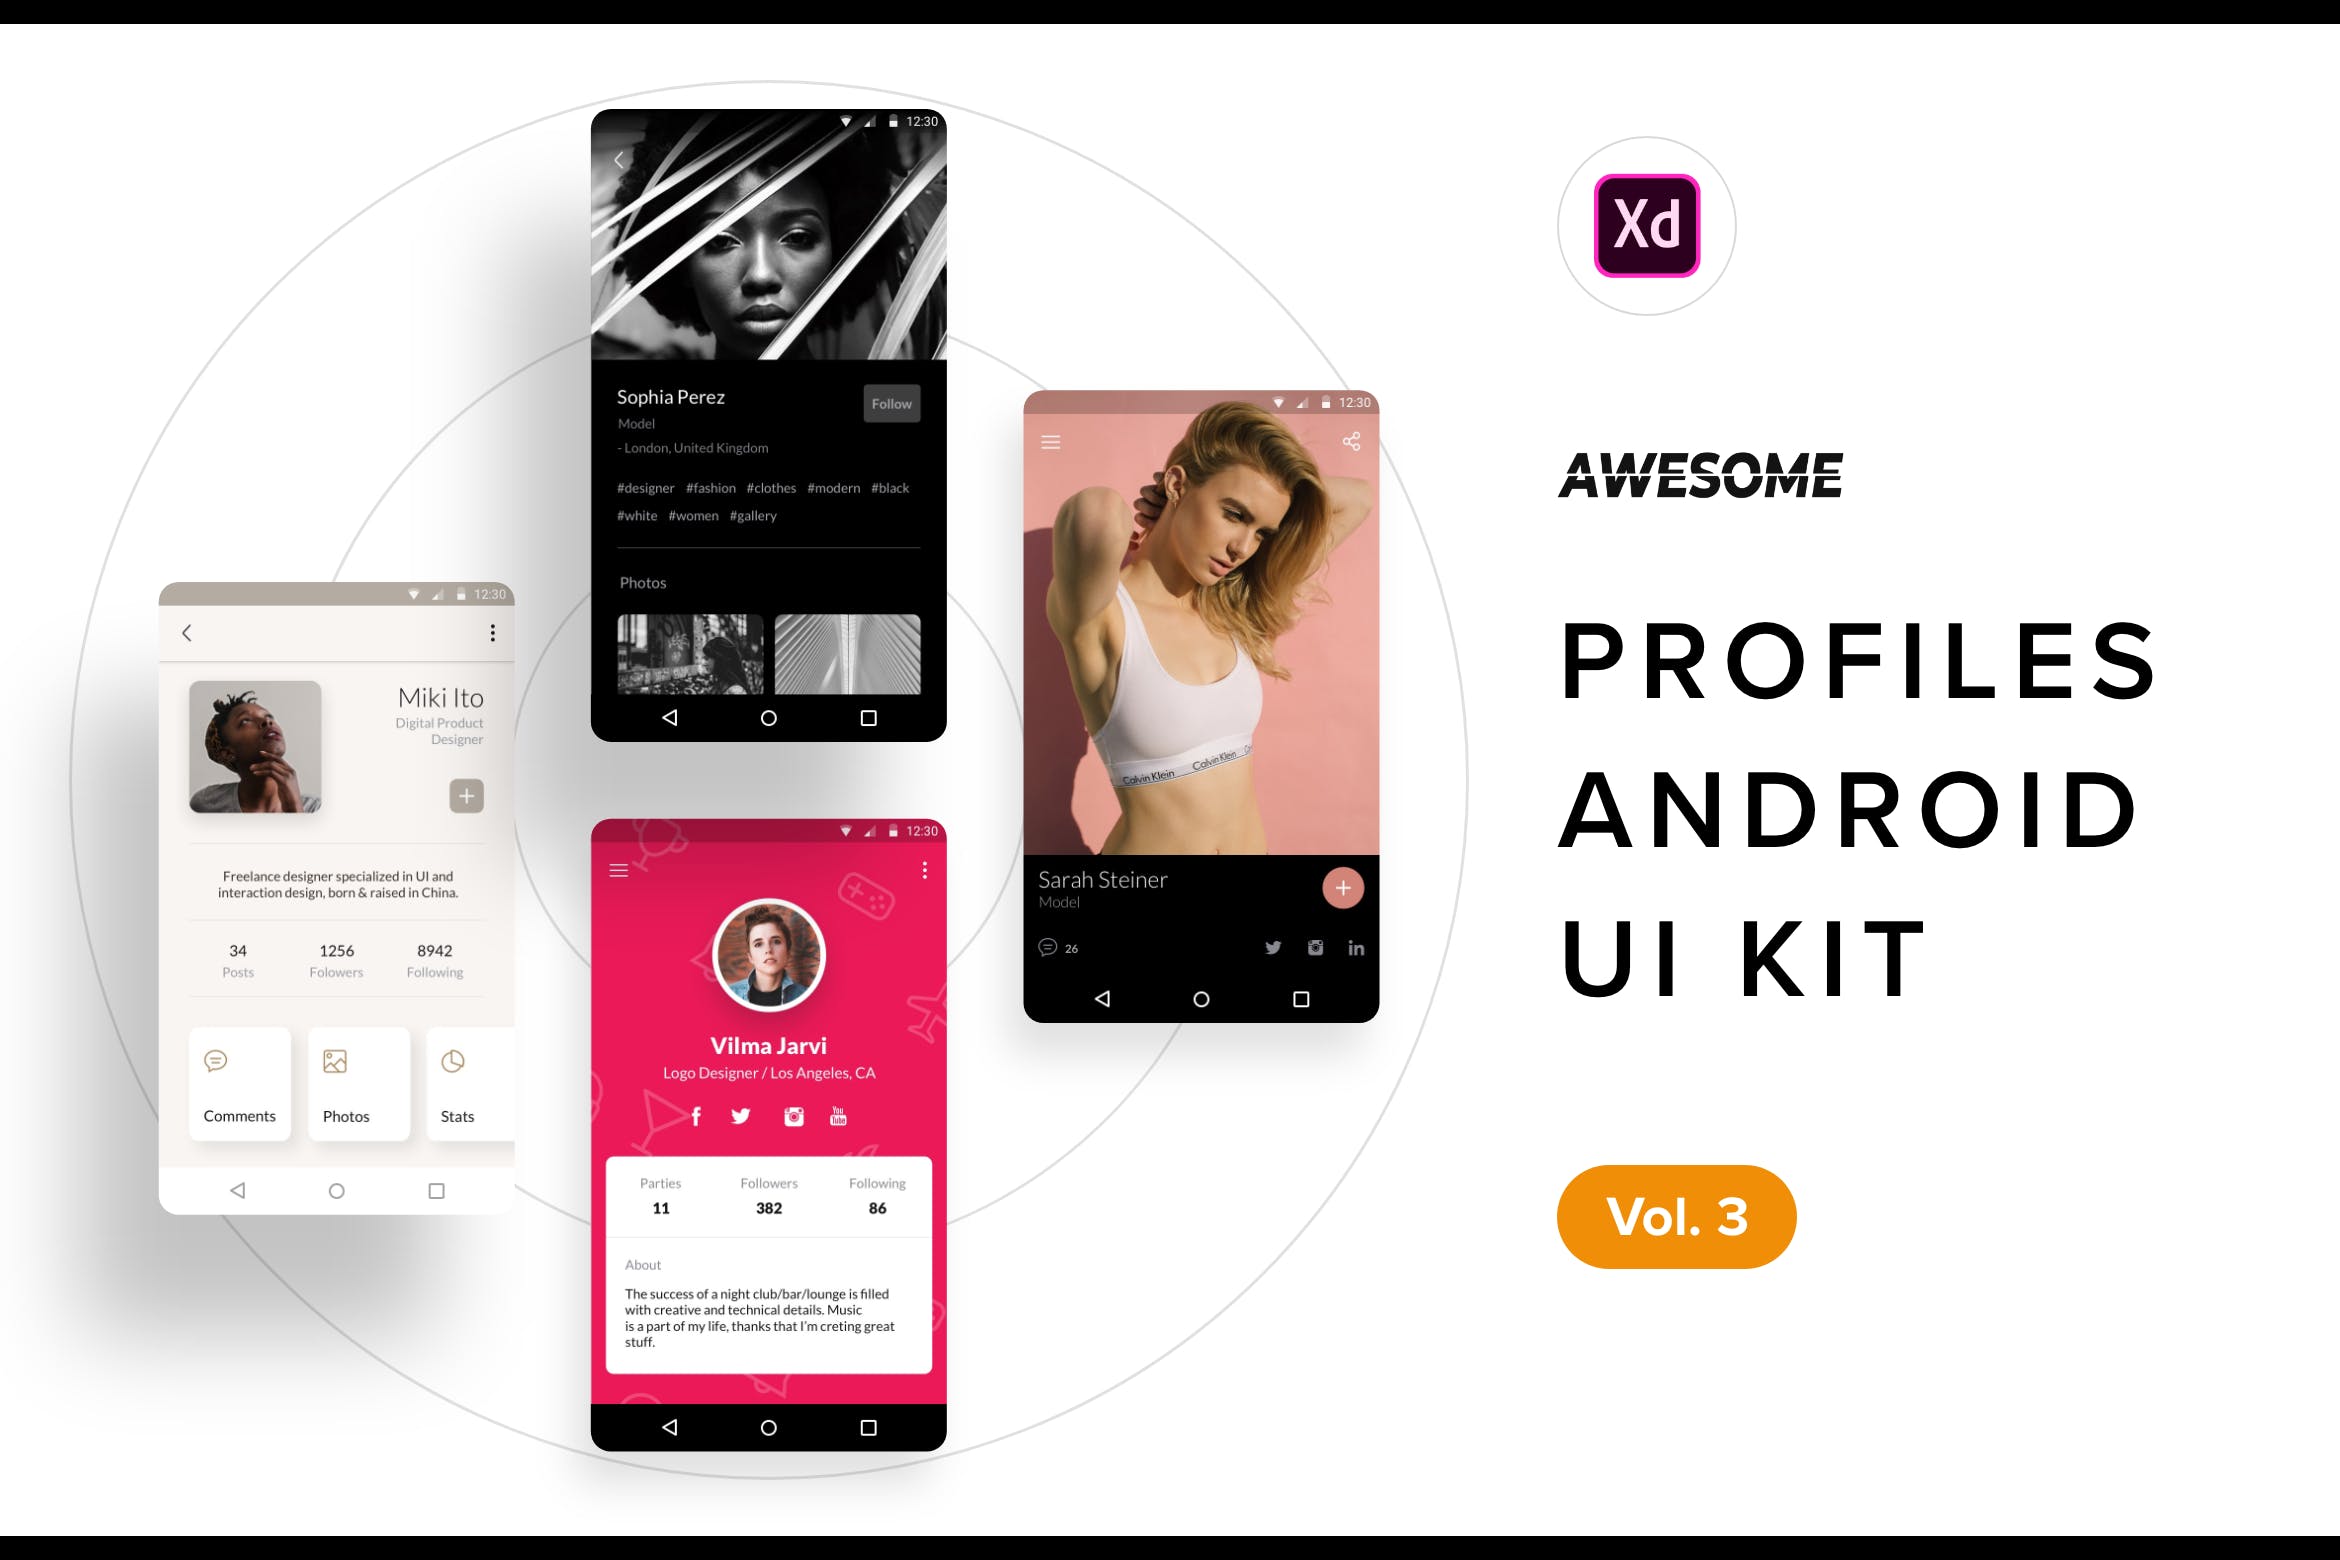 安卓平台社交APP应用用户界面设计XD模板v3 Android UI Kit – Profiles Vol. 3 (Adobe XD)插图